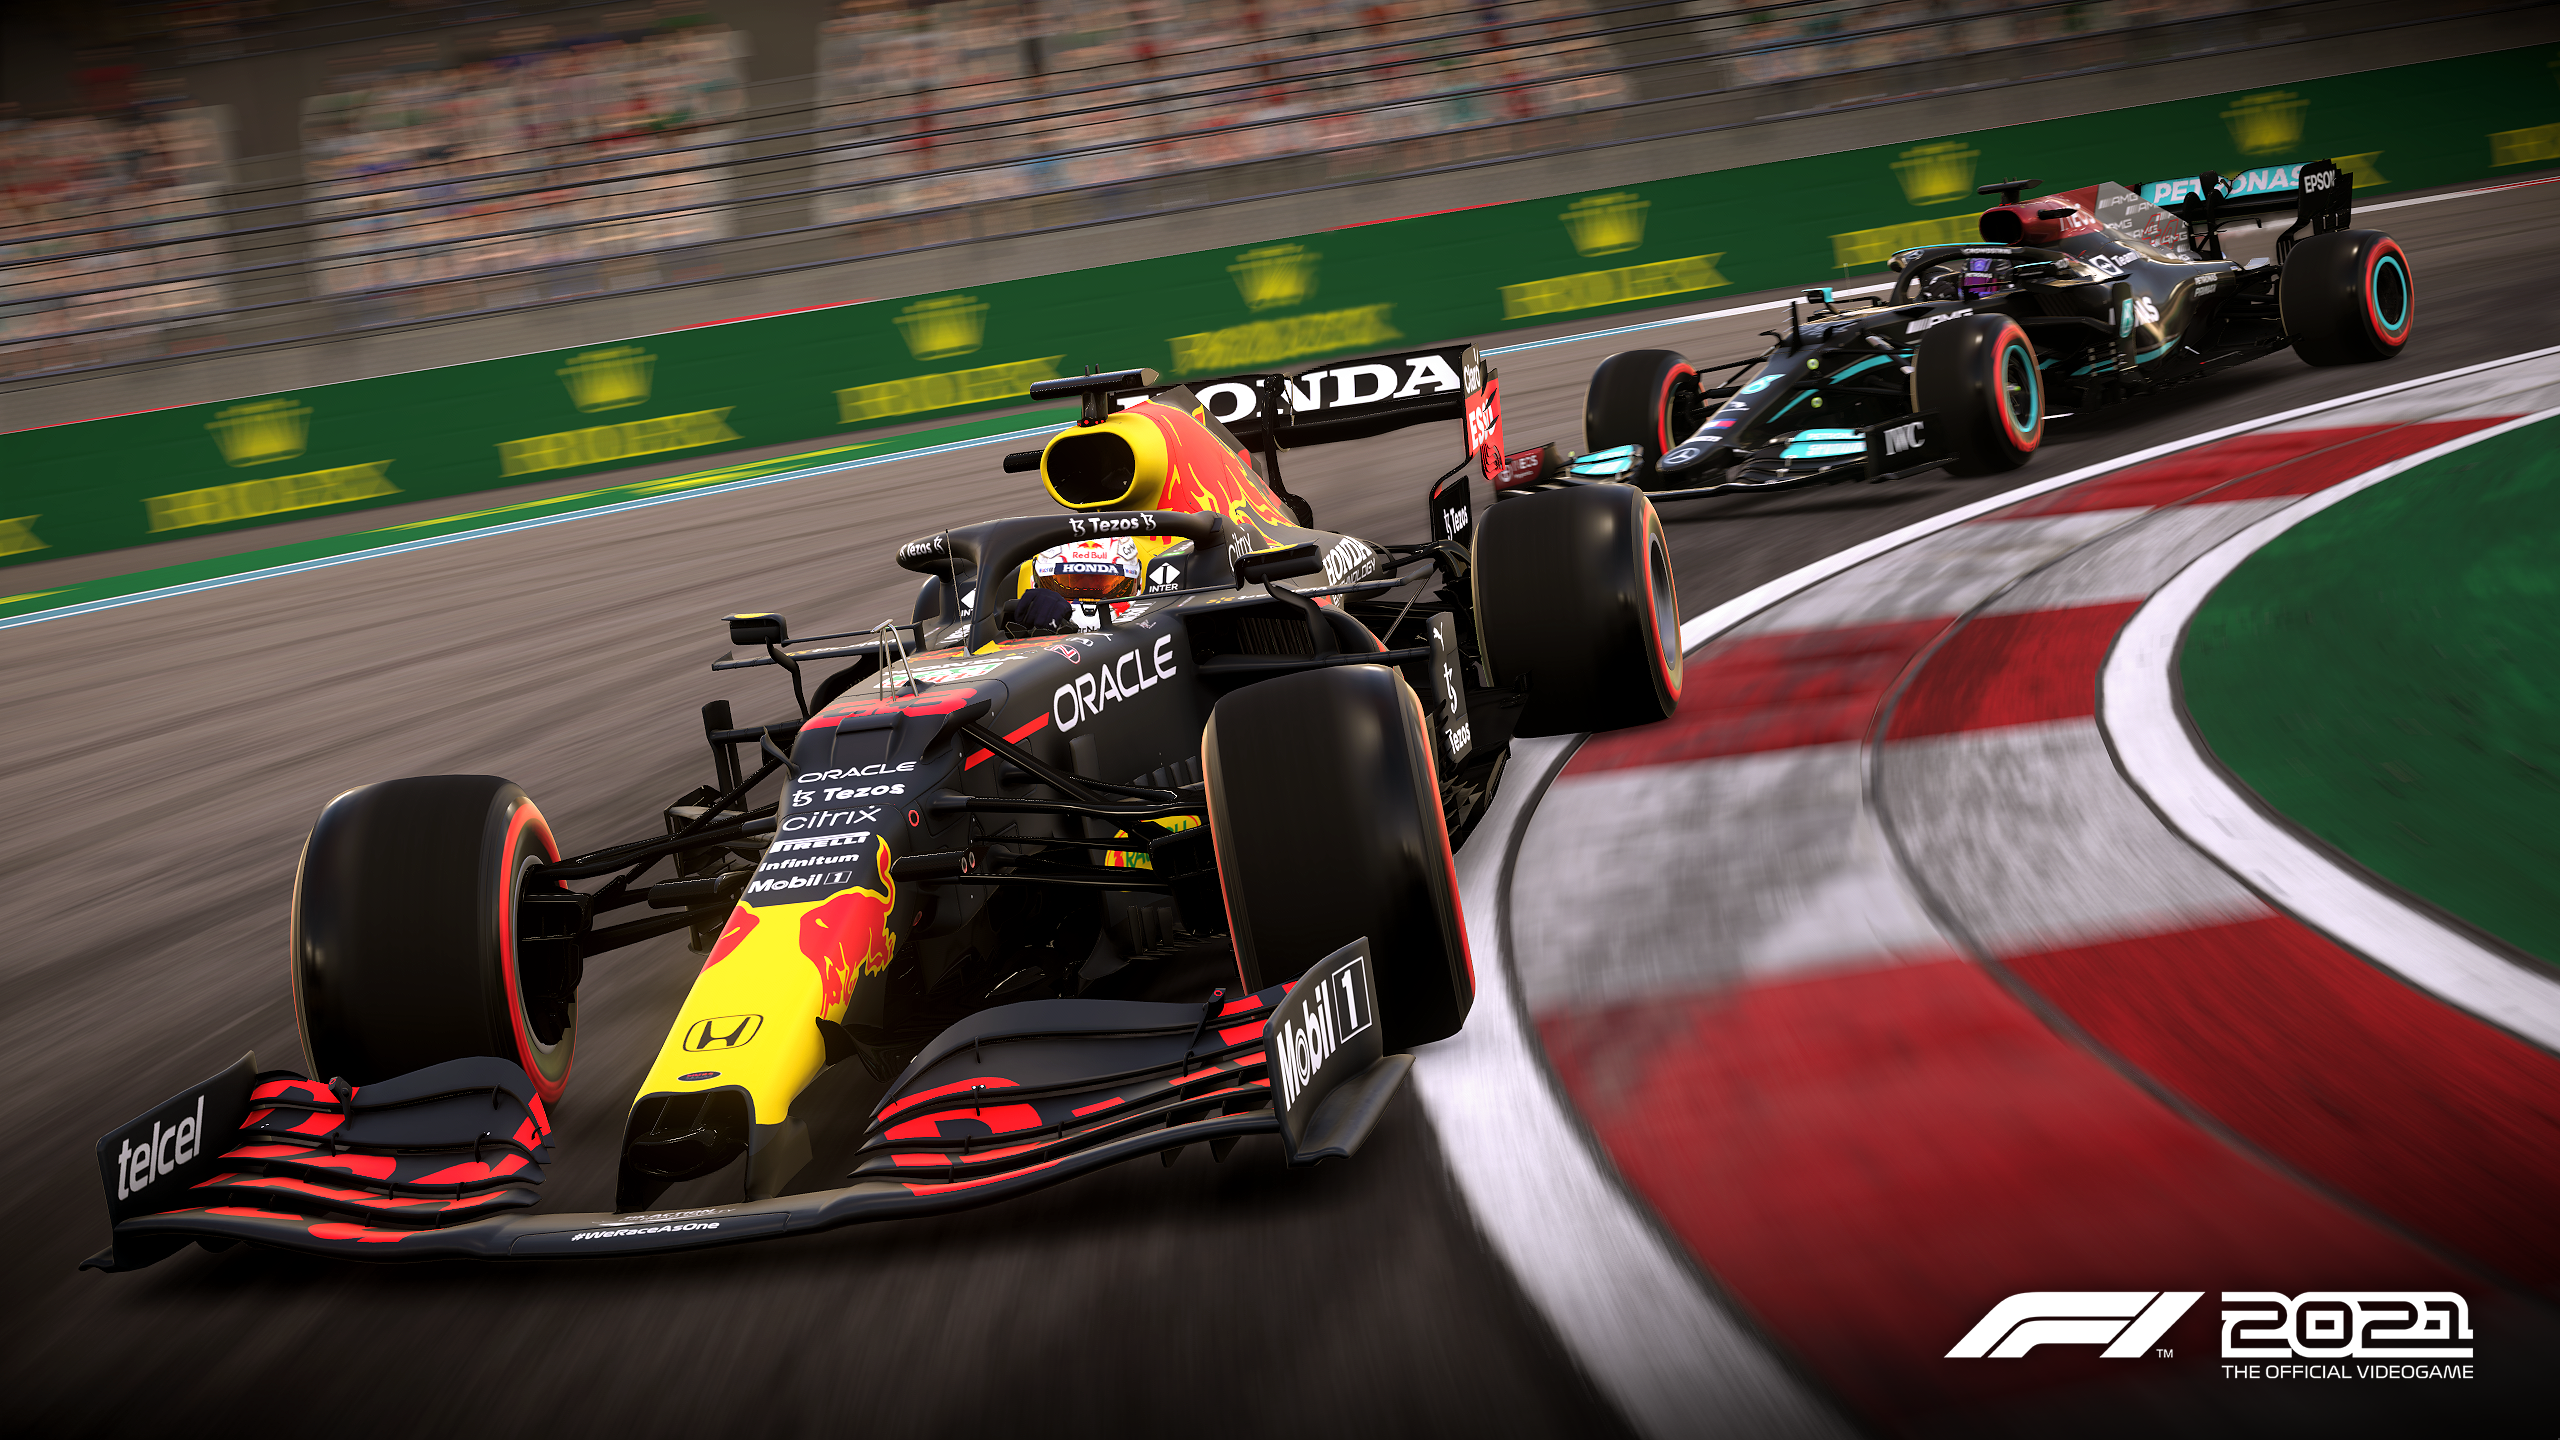 F1 2021 Game Predicts Max To Win F1 World Championship